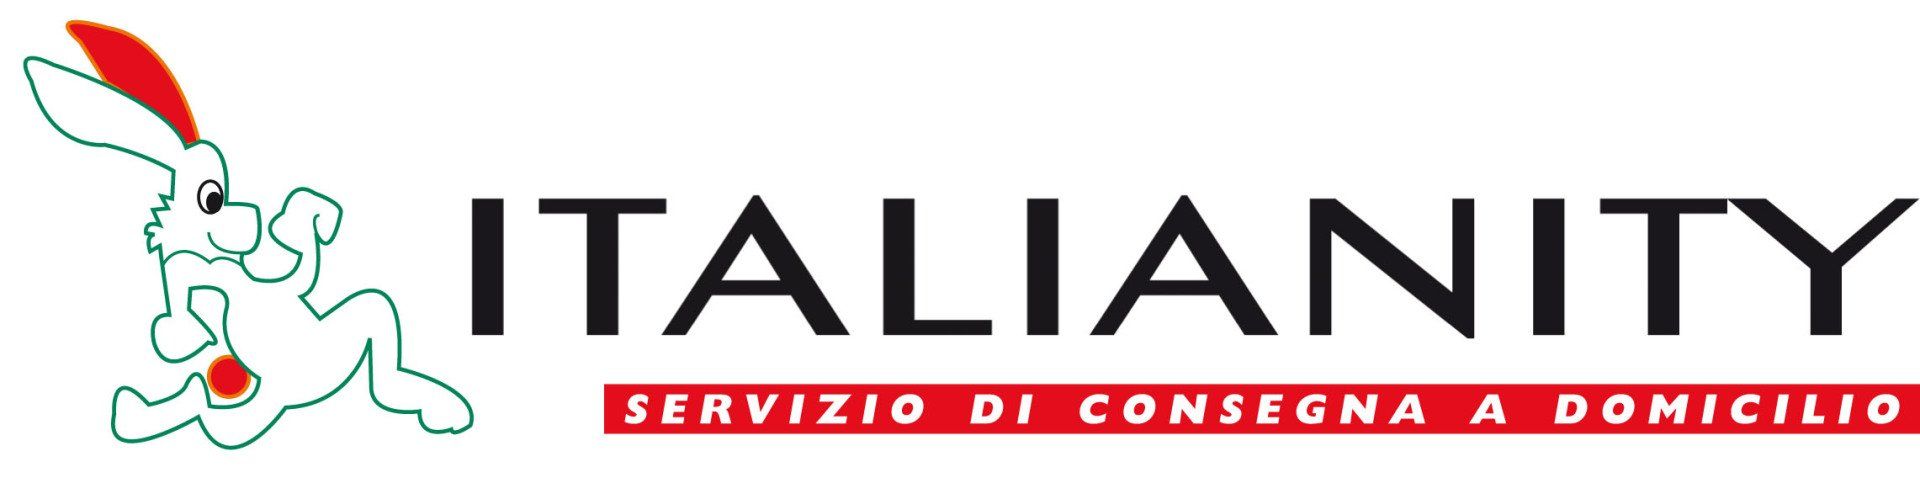 logo Italianity City Market